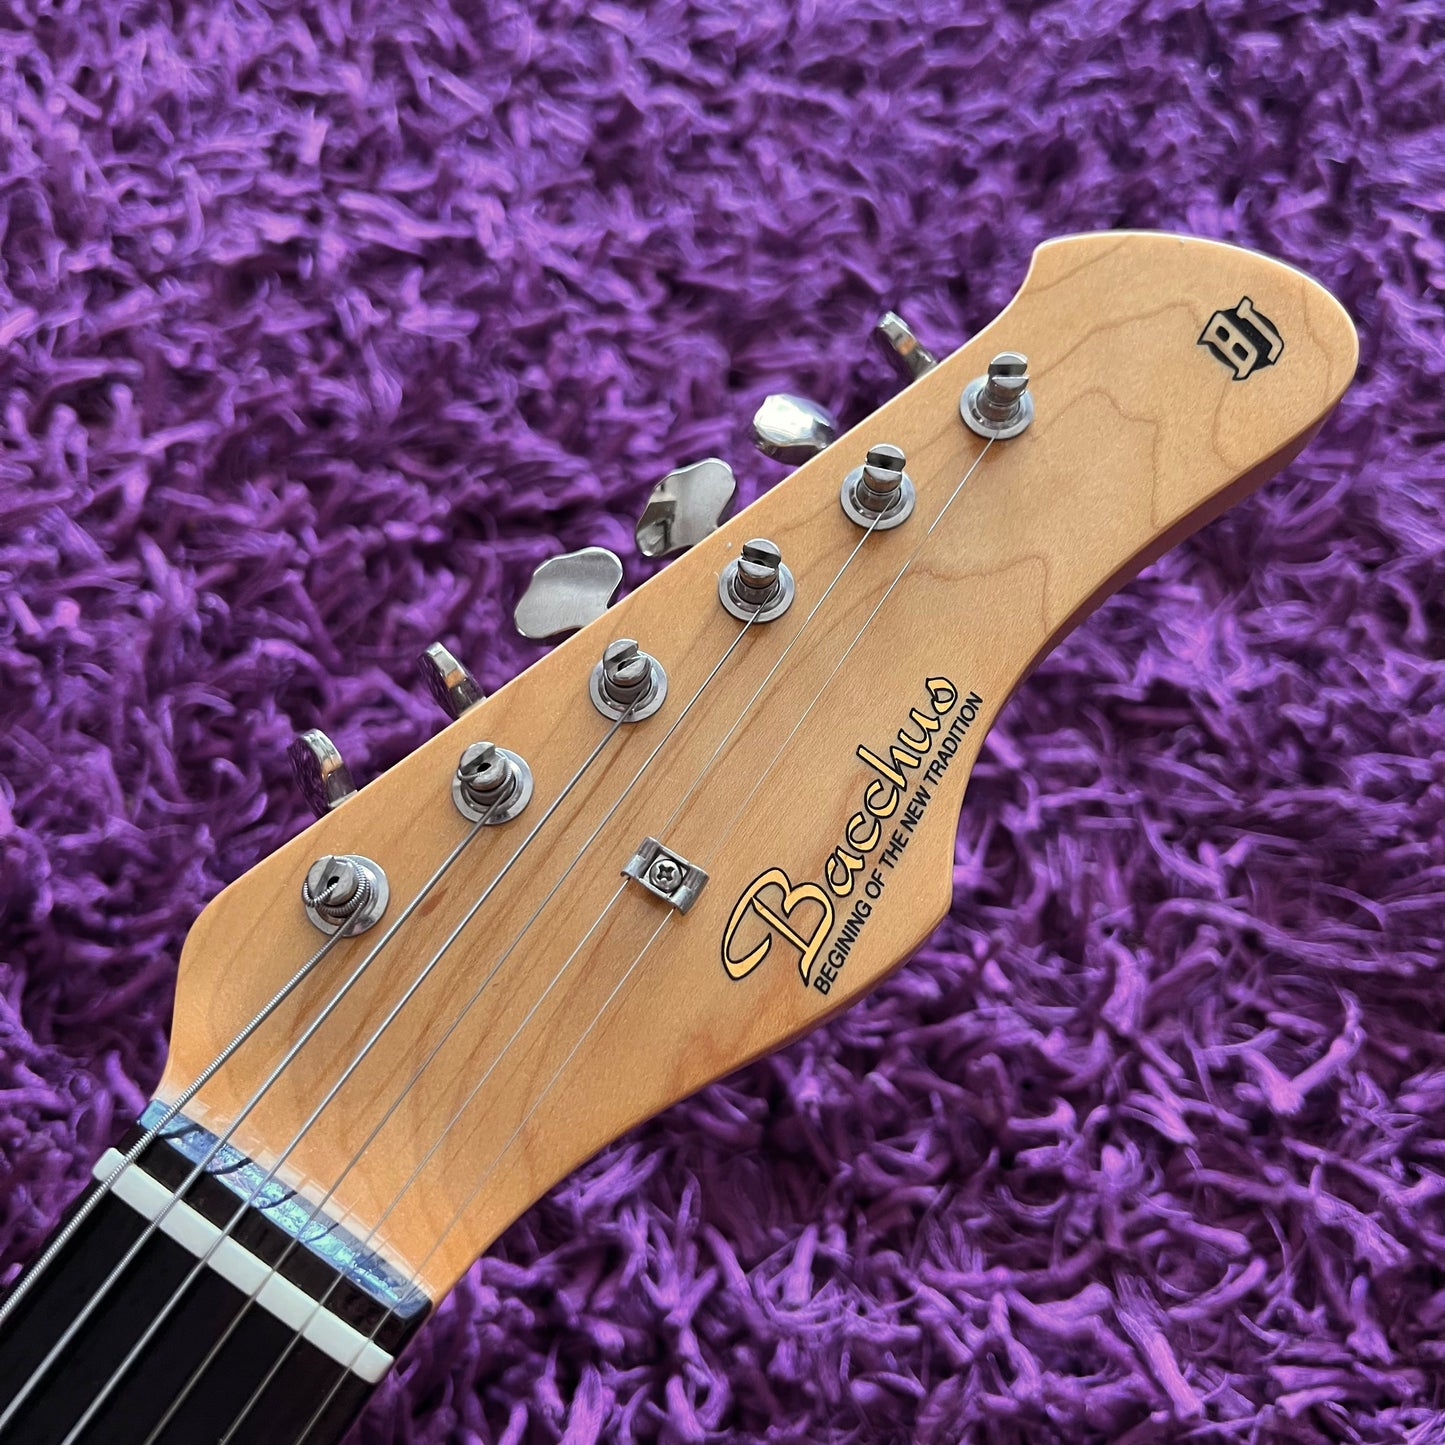 Bacchus JBG-66 Electric Guitar (MIJ)